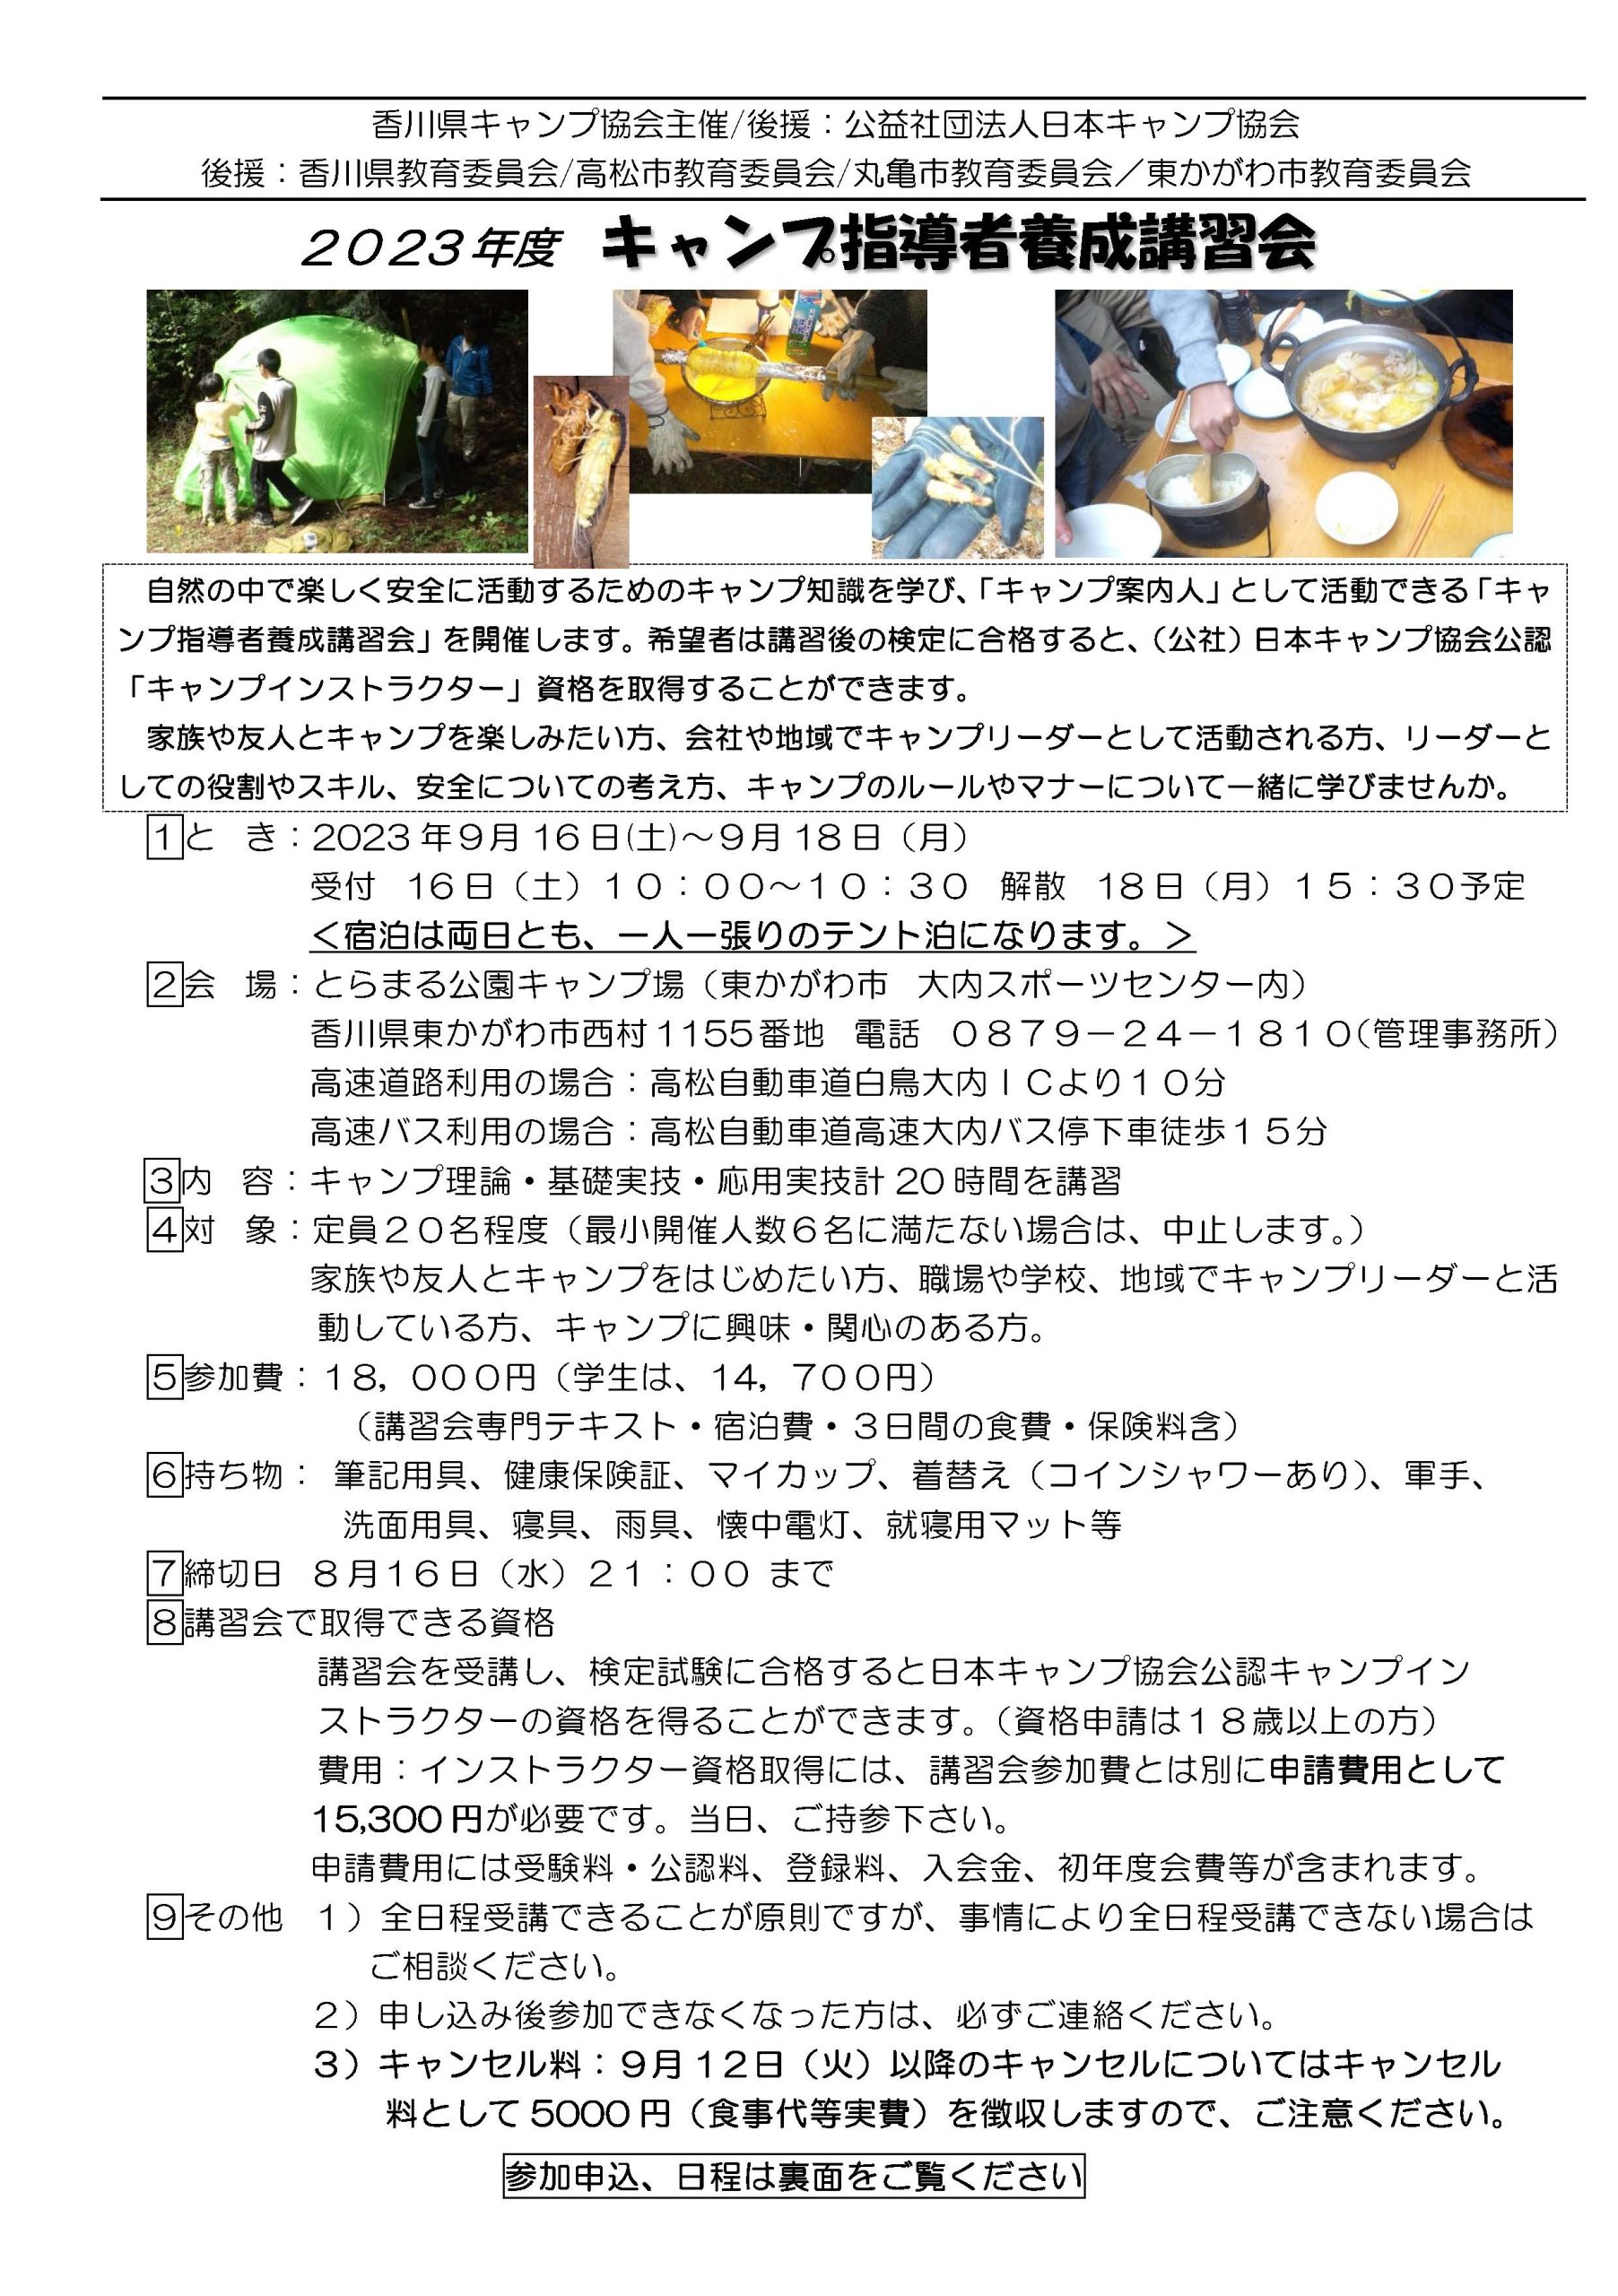 香川：キャンプインストラクター養成講習会（9/16～18） @ とらまる公園キャンプ場